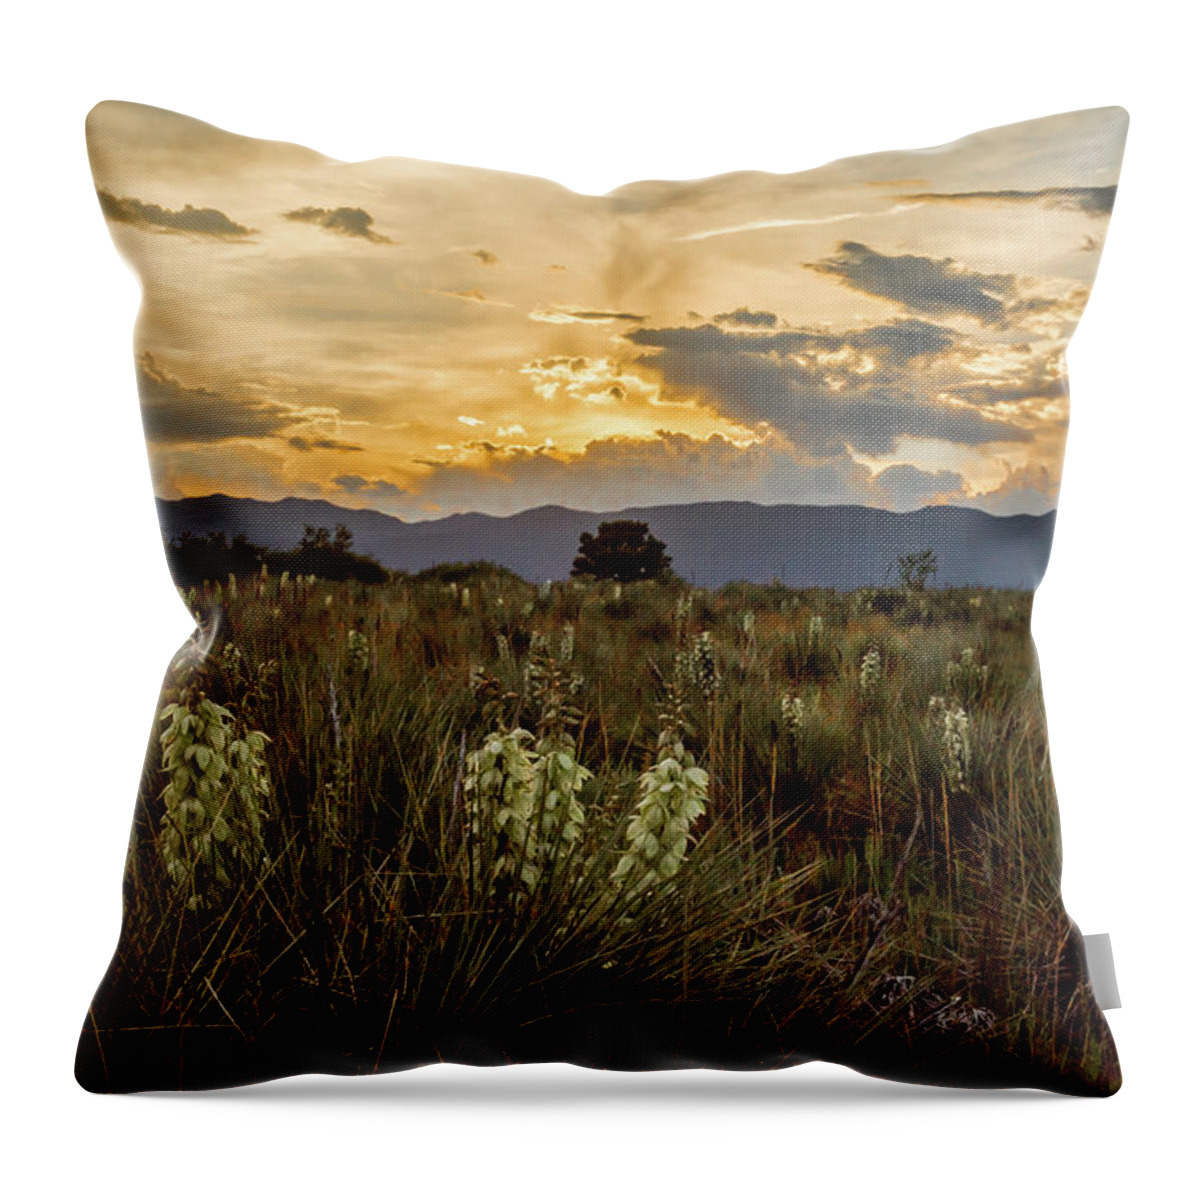 Colorado Throw Pillow featuring the photograph Sunset over Colorado by Jaime Mercado